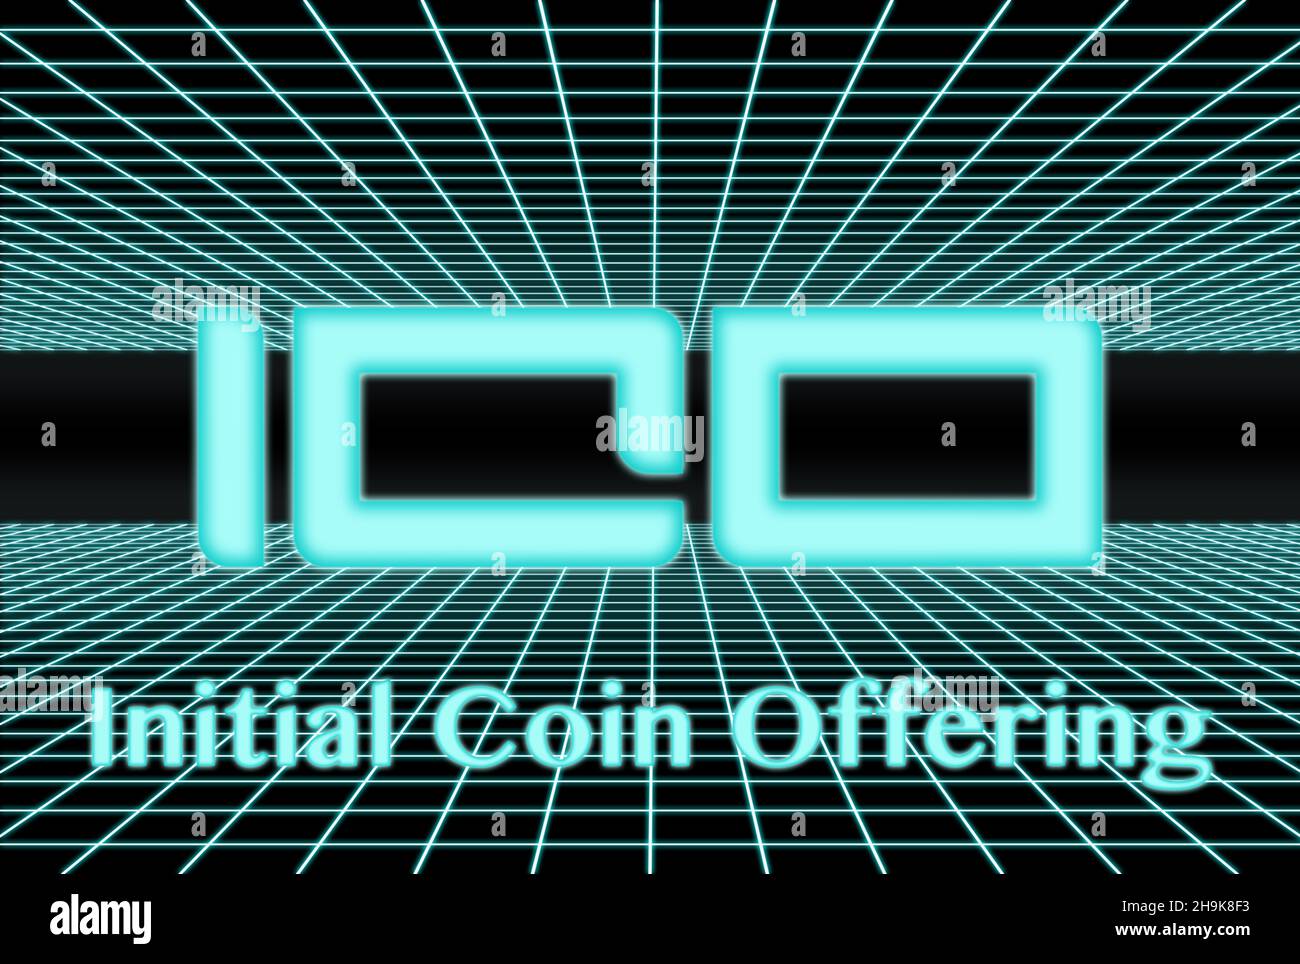 3D griglia del 80s con l'acronimo ICO (Initial Coin offering) scritto al centro. Foto Stock